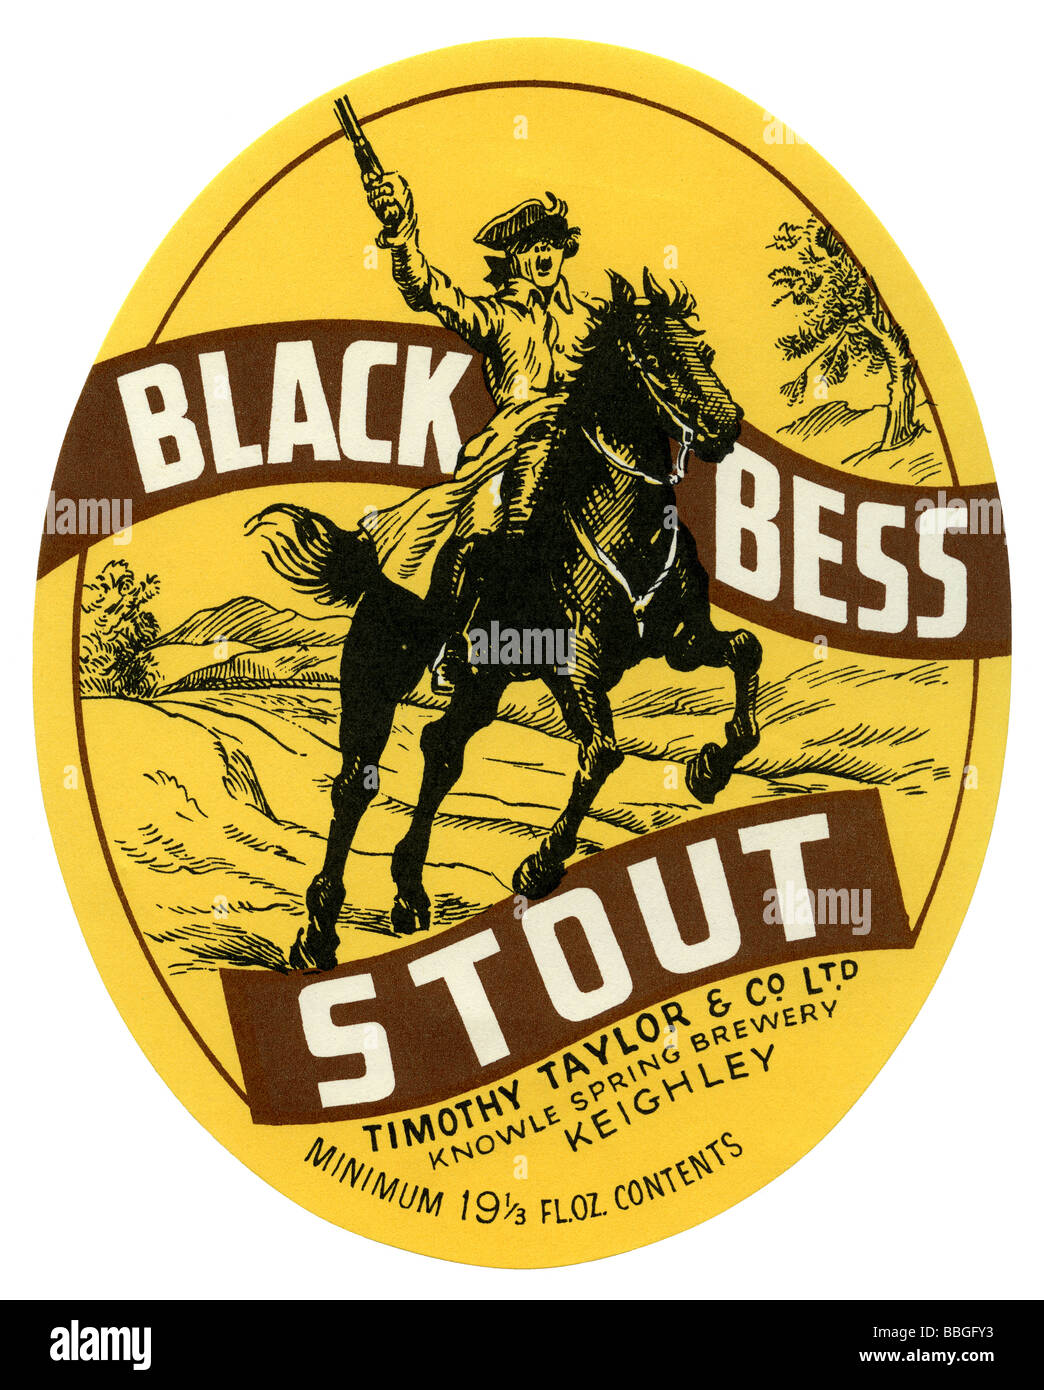 Ancienne étiquette bière britannique pour Timothy Taylor's Black Bess Stout, Keighley, West Yorkshire Banque D'Images